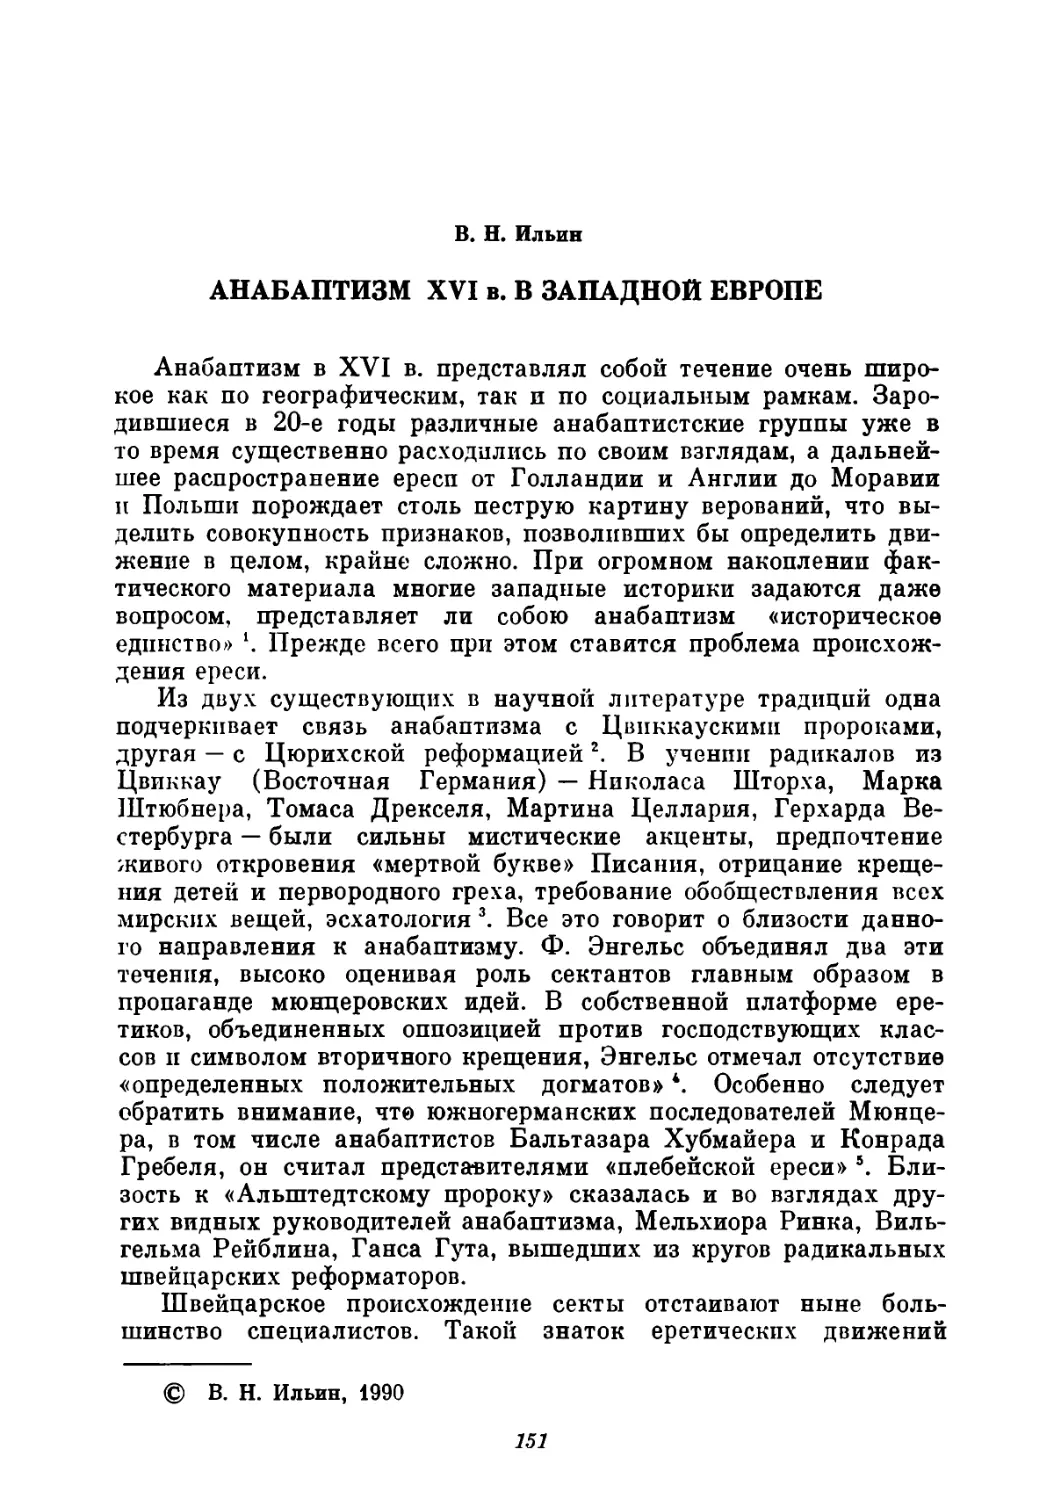 B. Н. Ильин. Анабаптизм XVI в. в Западной Европе